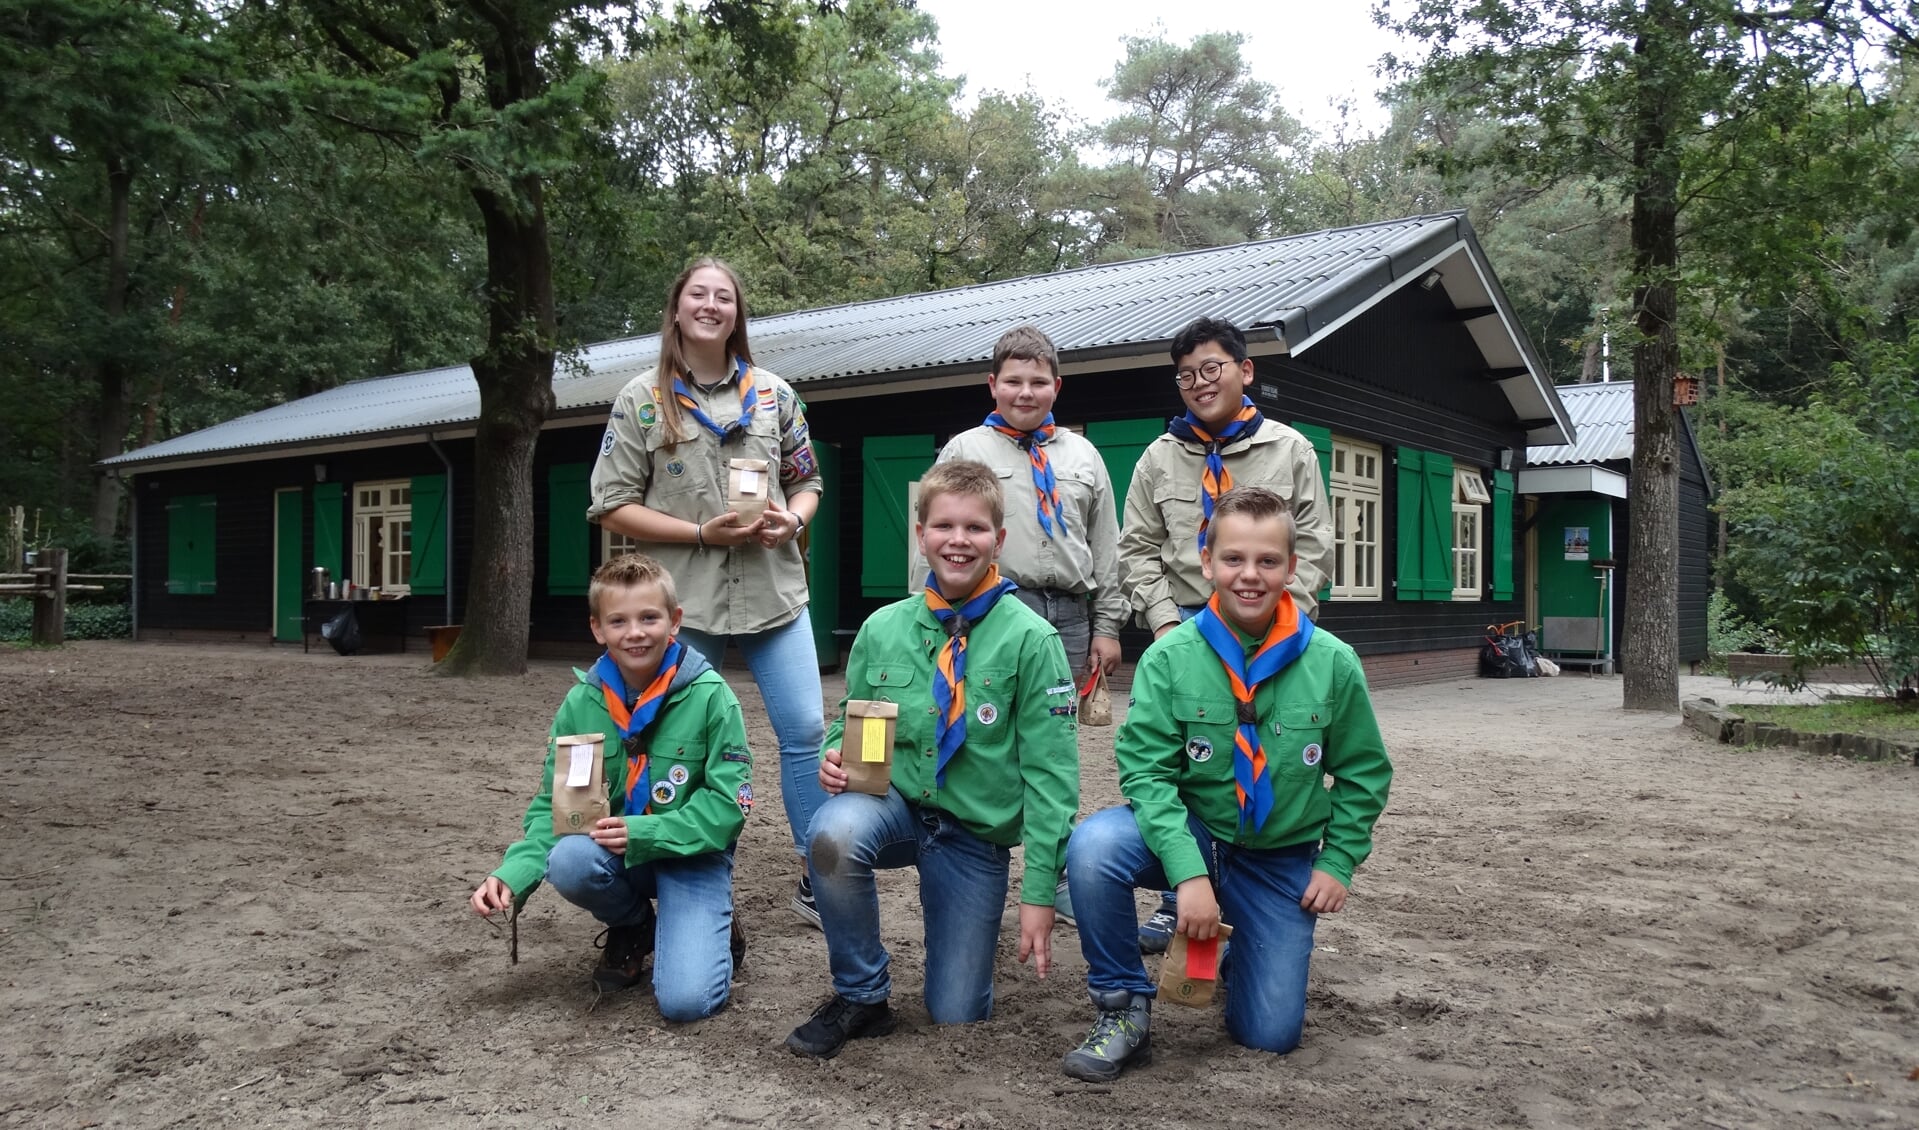 De jaarlijkse tulpenbollenactie van Scouting Oosterhof - Niej Begin vindt op 8 oktober weer plaats